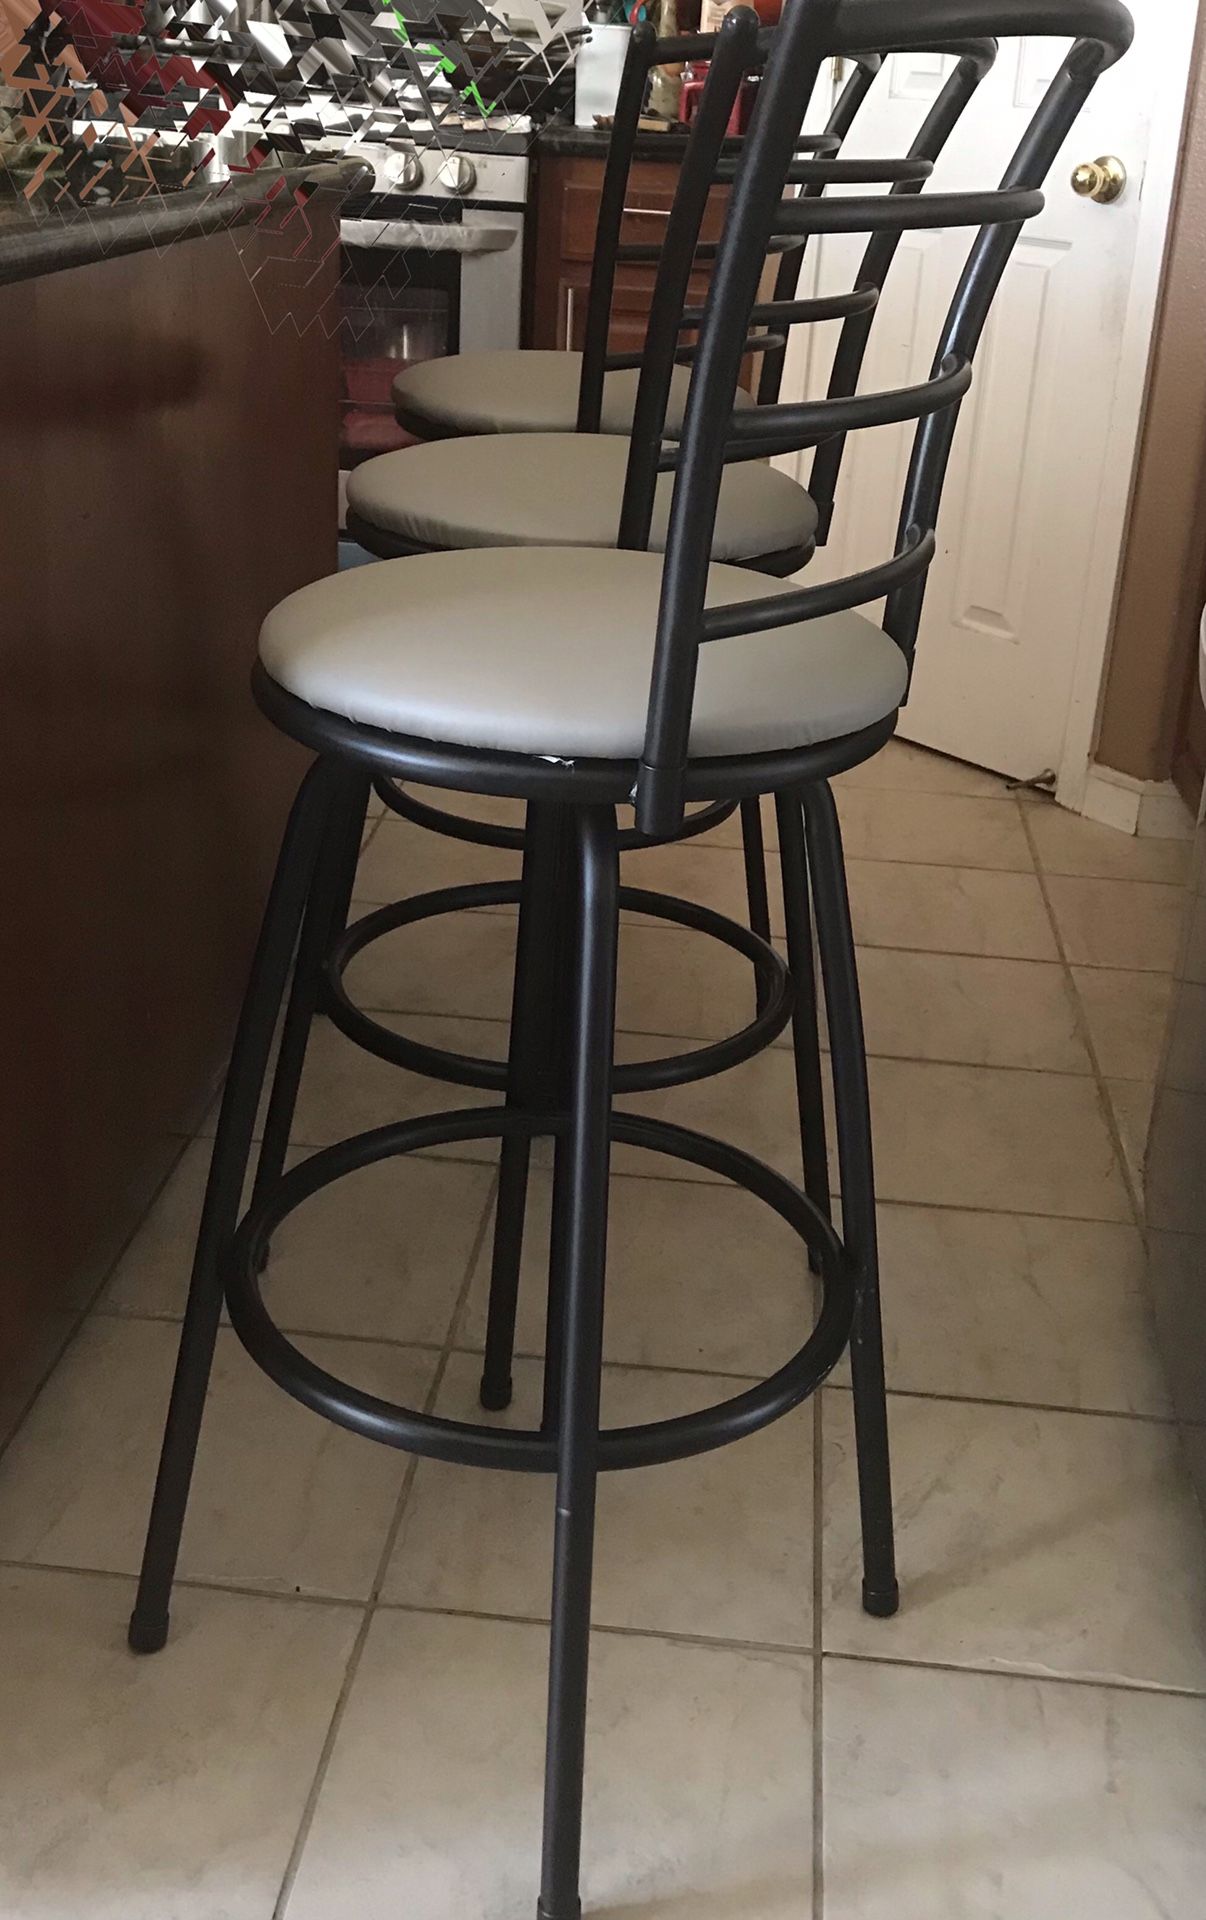 3 gray and black swivel bar stools